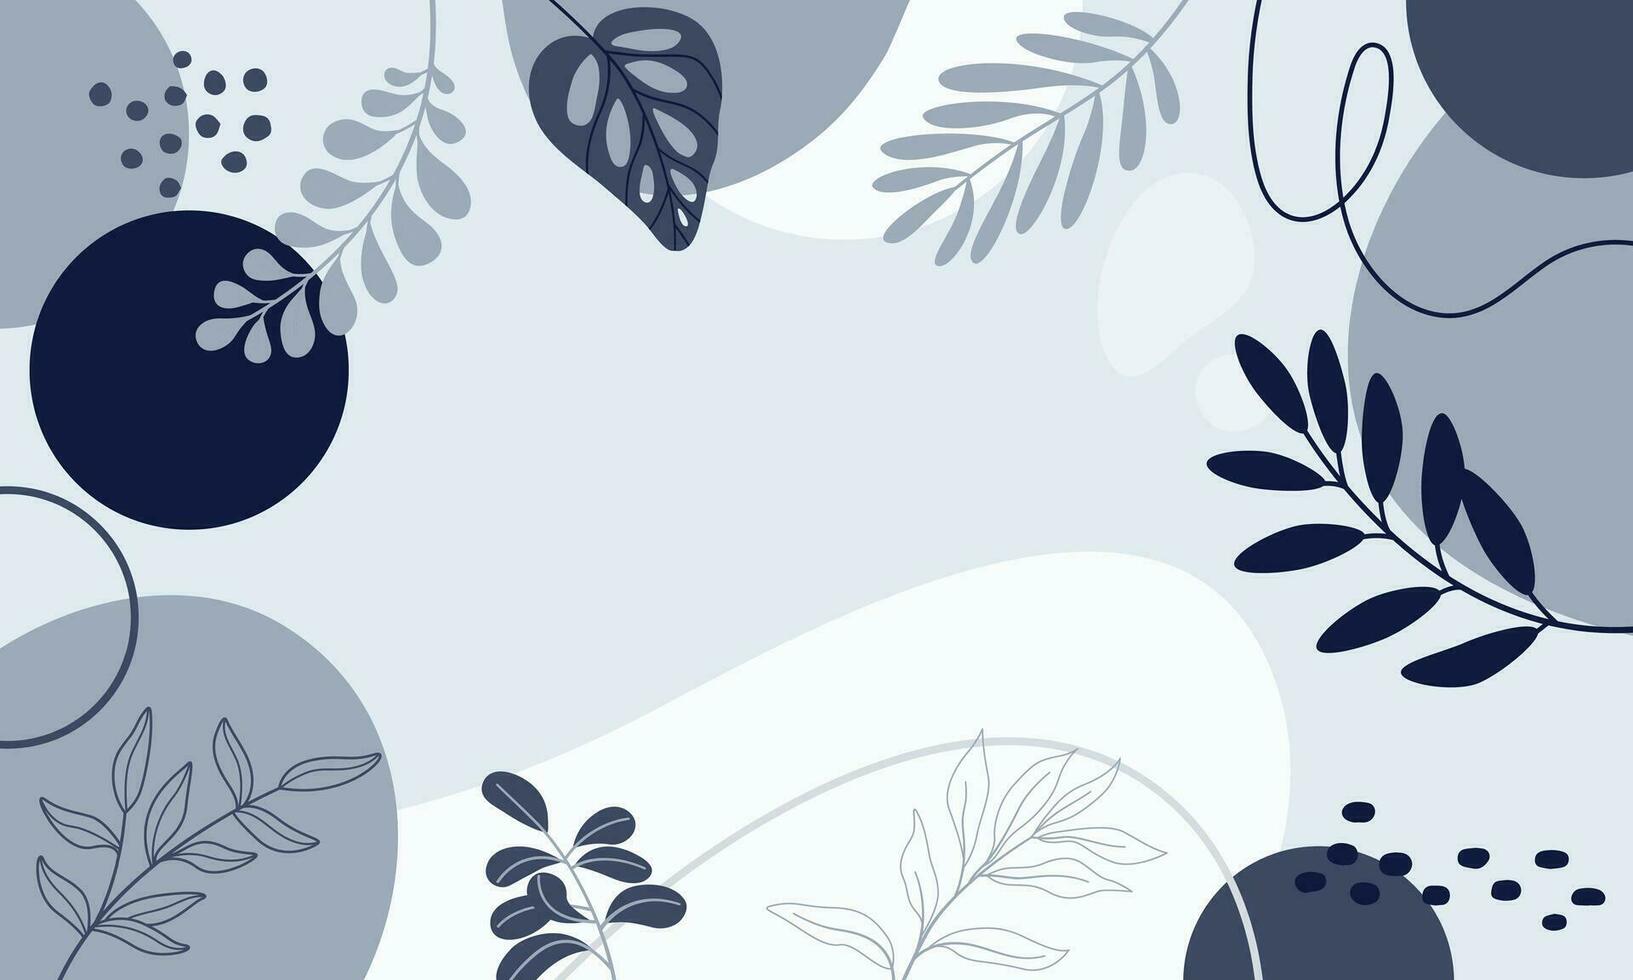 diseño banner marco flor primavera fondo con hermosa. fondo de flores para el diseño. fondo colorido con plantas tropicales. vector